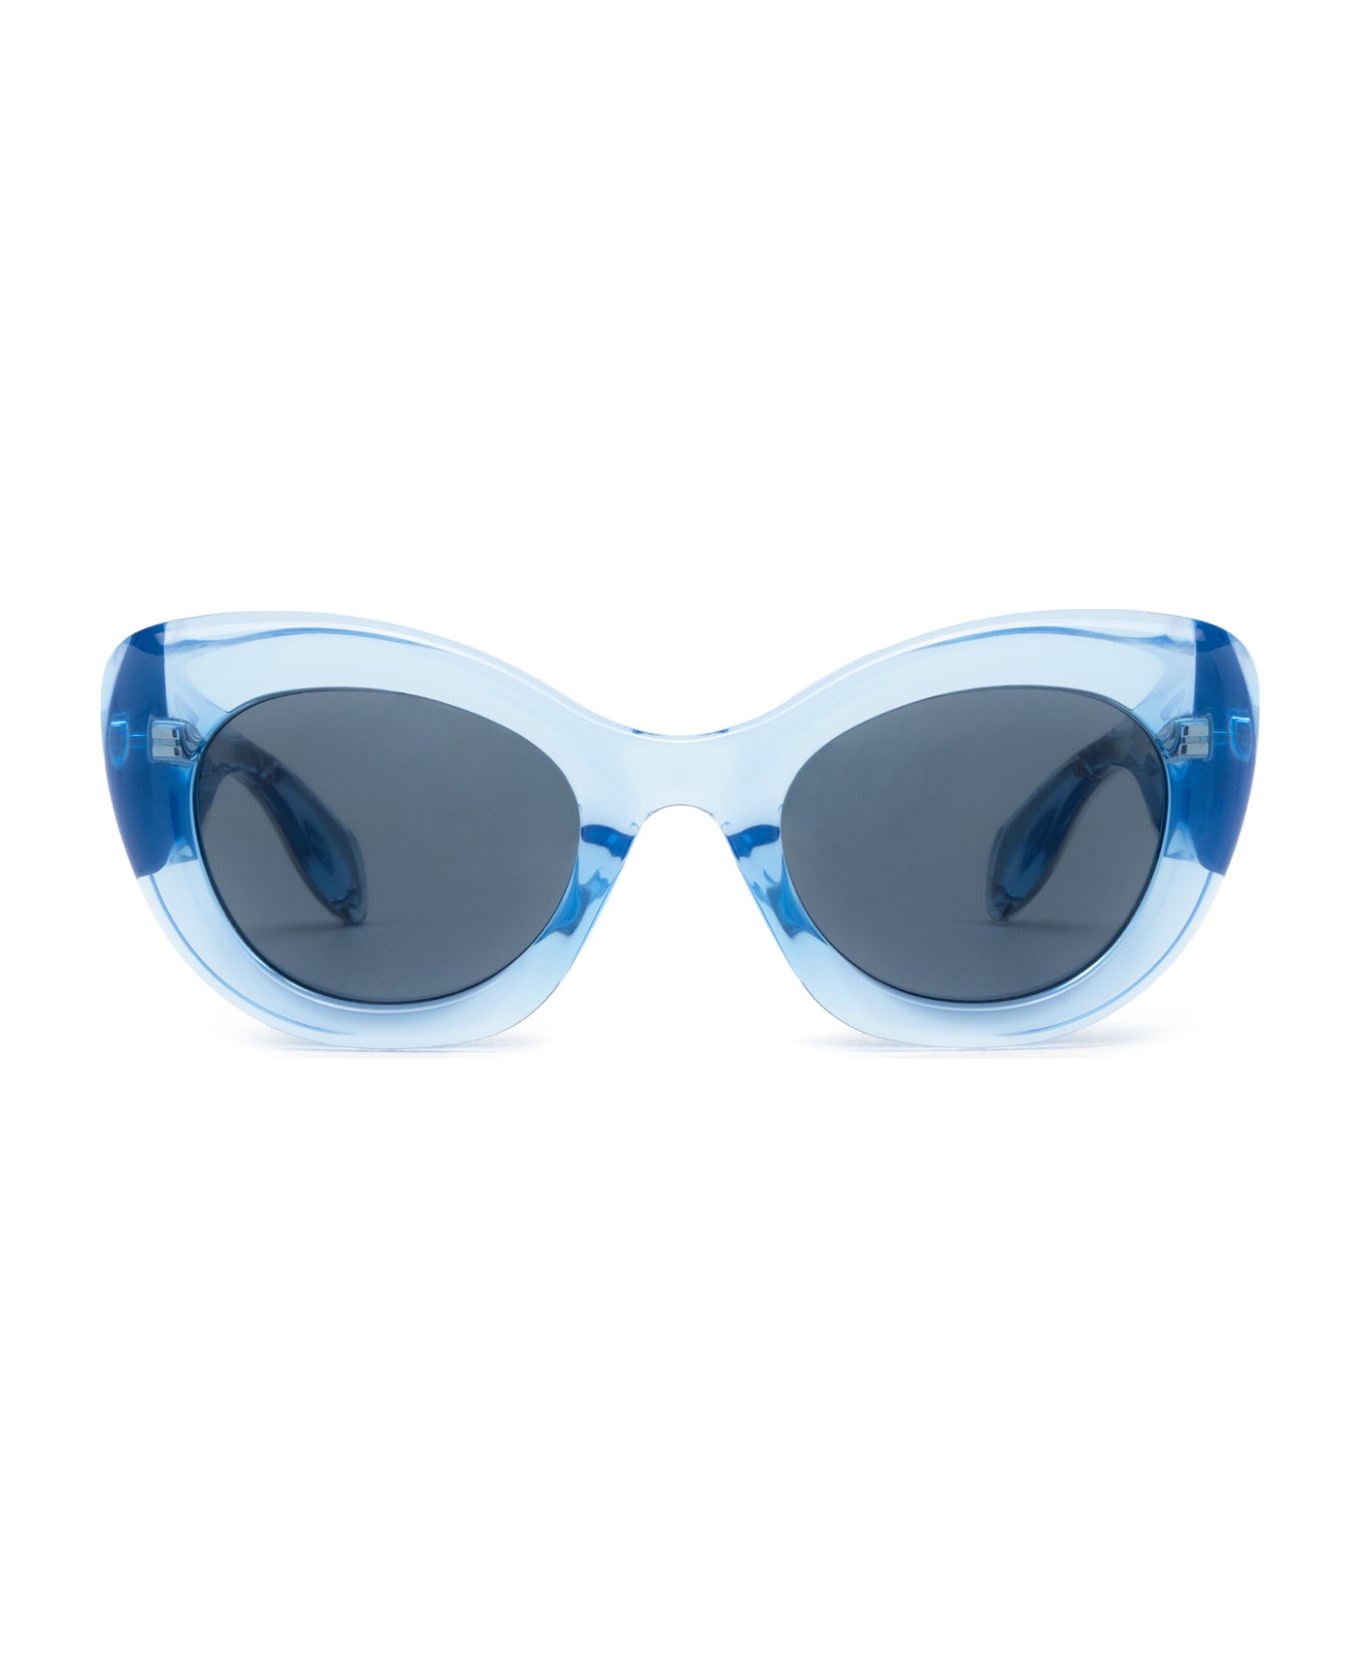 Alexander McQueen Eyewear Am0403s Light Blue Sunglasses - Light Blue